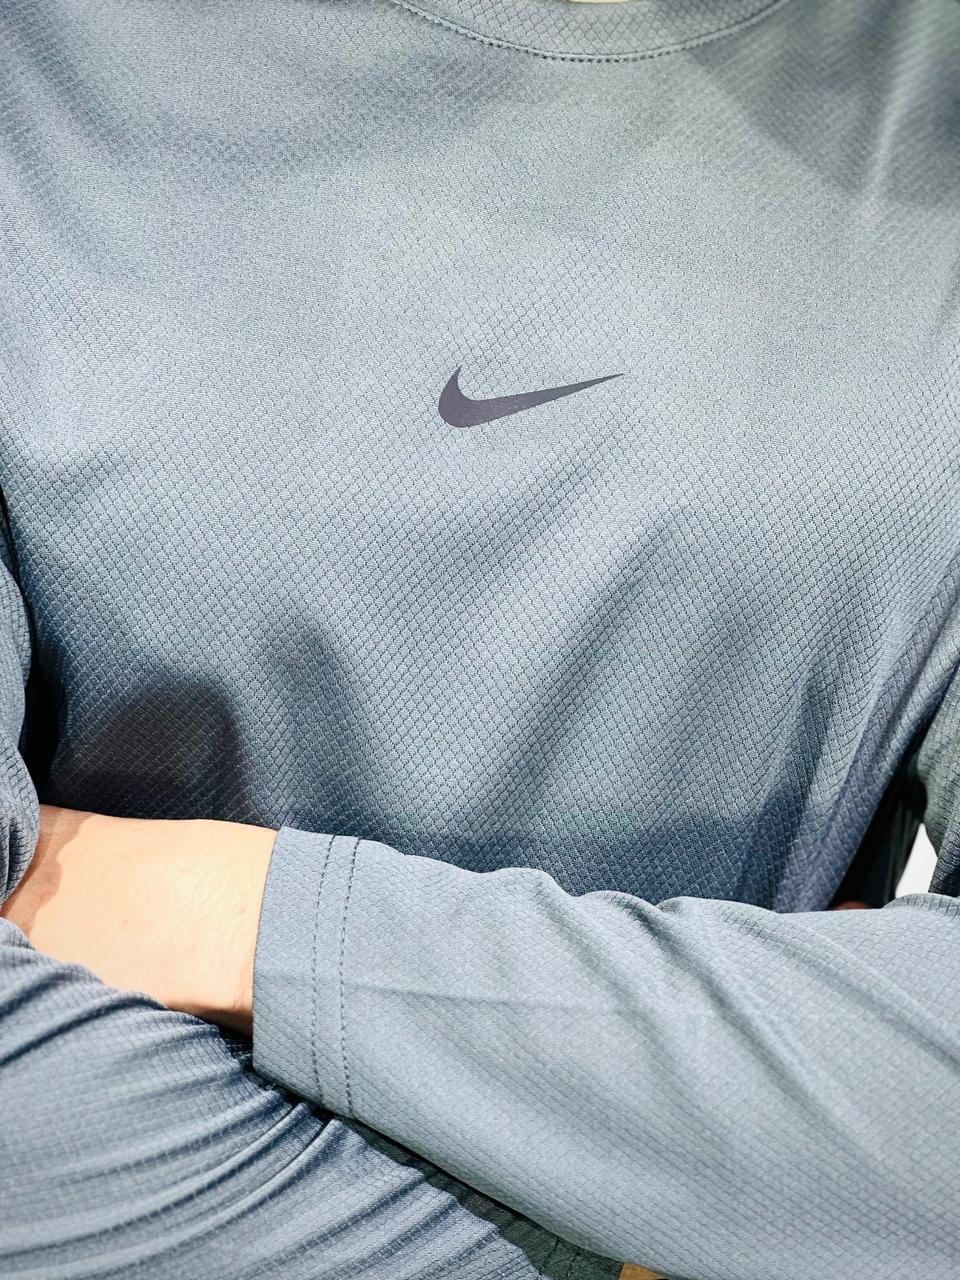 Nike Premium Quality Shirt in Dri-Fit stuff.